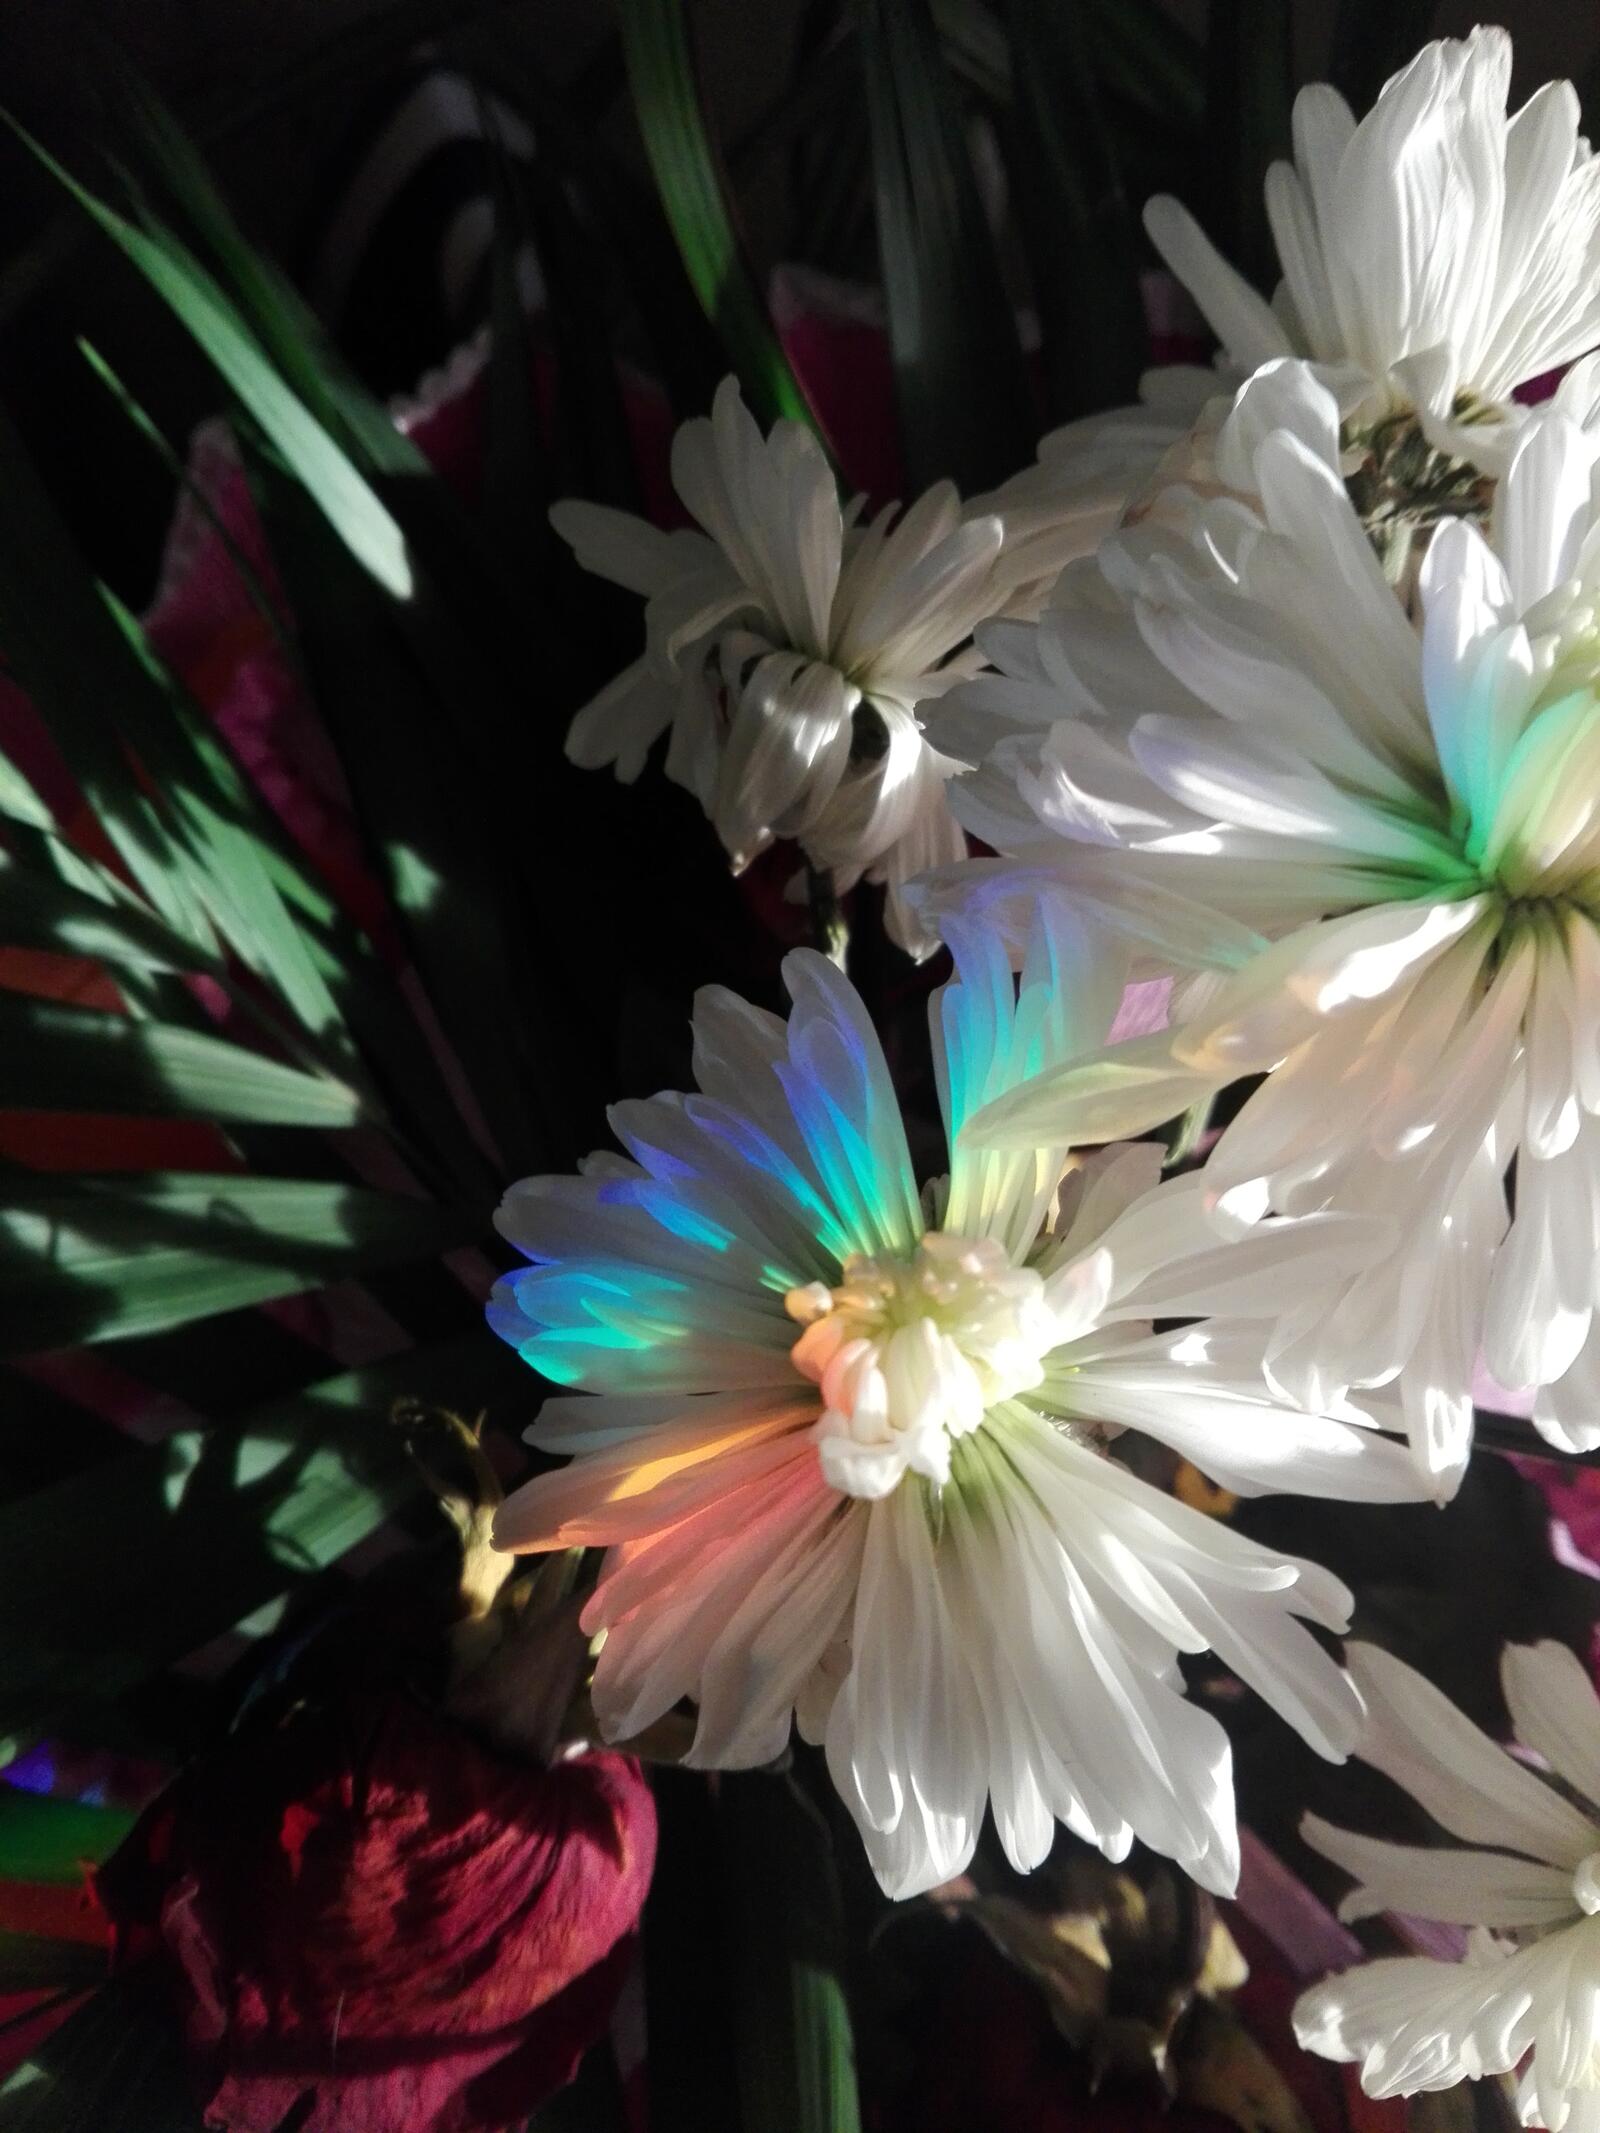 Wallpapers flowers rainbow chrysanthemum on the desktop